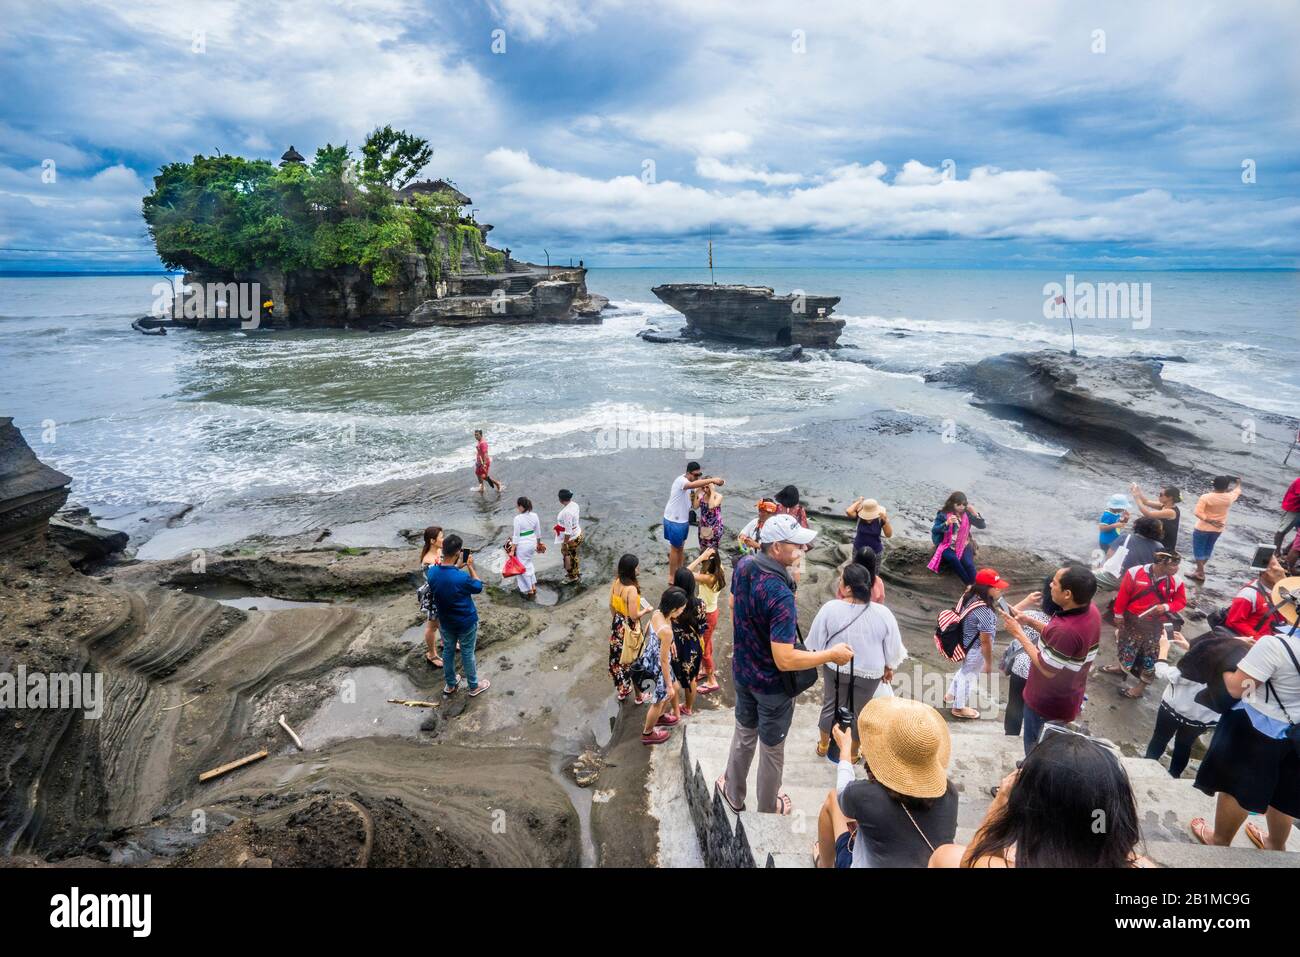 Visiteurs à Tanah Lot, une formation de roches au large de l'île indonésienne de Bali, où se trouve un ancien temple de pèlerinage hindou Pura Tanah Lot, Bali, Indonésie Banque D'Images